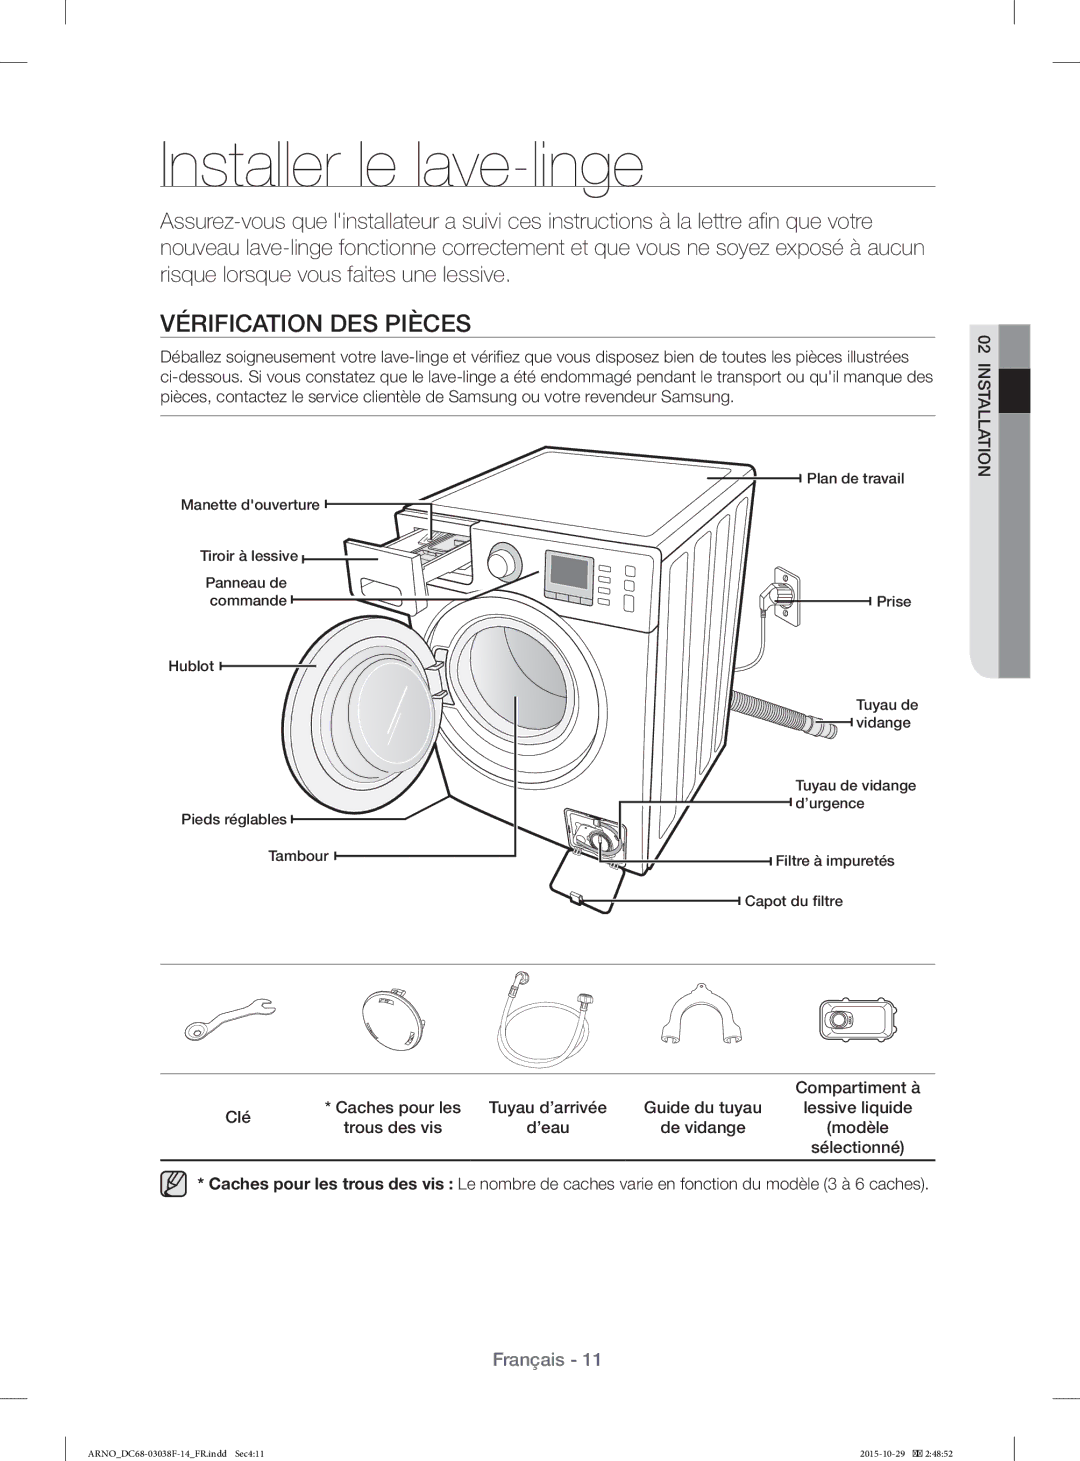 Samsung WF1124ZAC/XEN manual Installer le lave-linge, Vérification DES Pièces, Clé Caches pour les, Trous des vis ’eau 